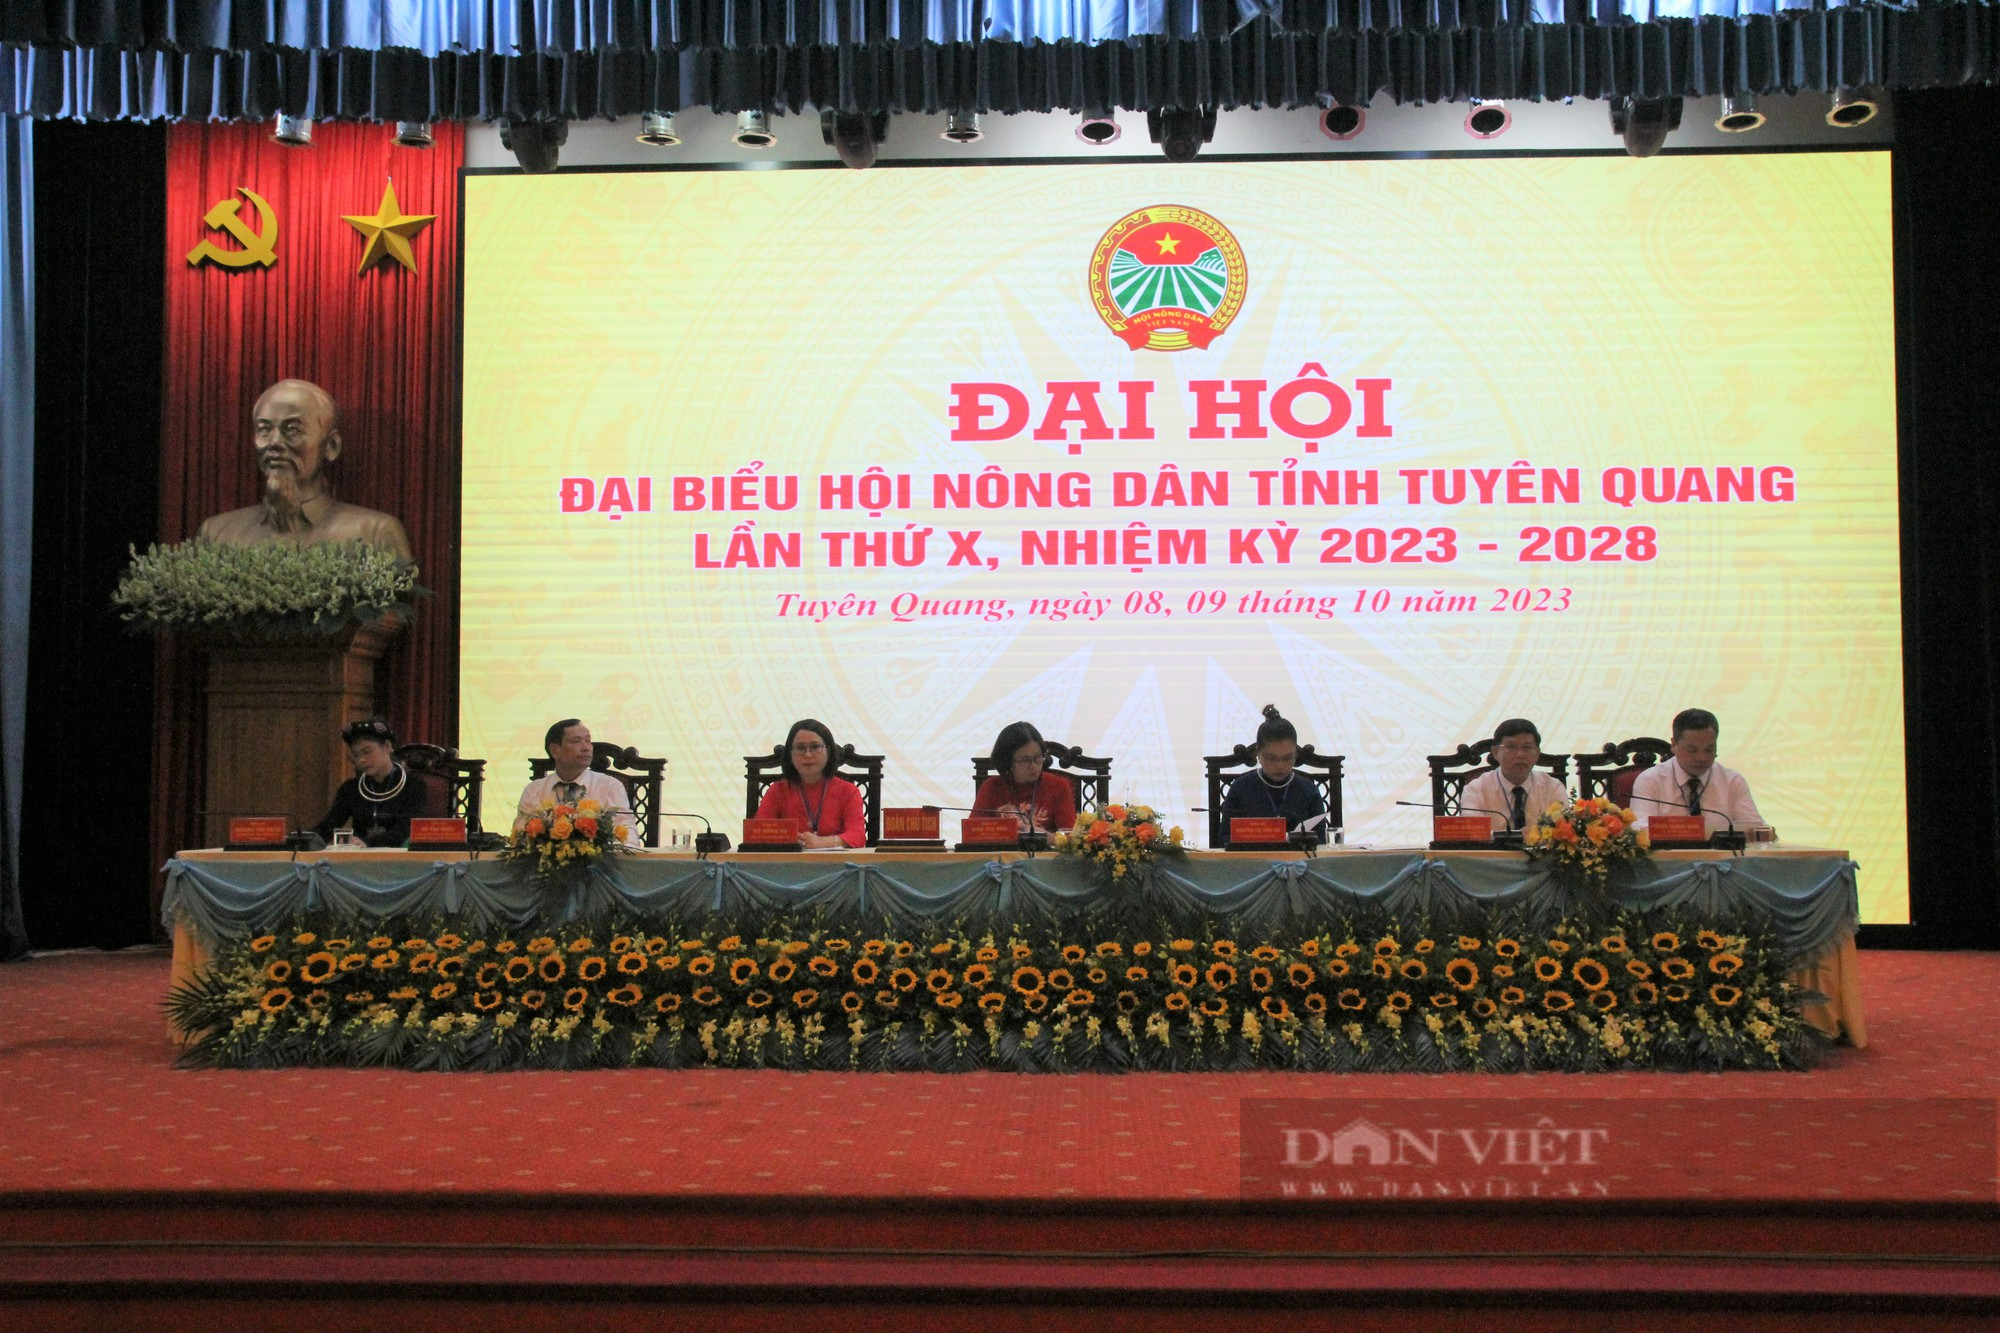 28 đồng chí được bầu vào Ban chấp hành Hội Nông dân tỉnh Tuyên Quang khóa X, nhiệm kỳ 2018 - 2023 - Ảnh 2.